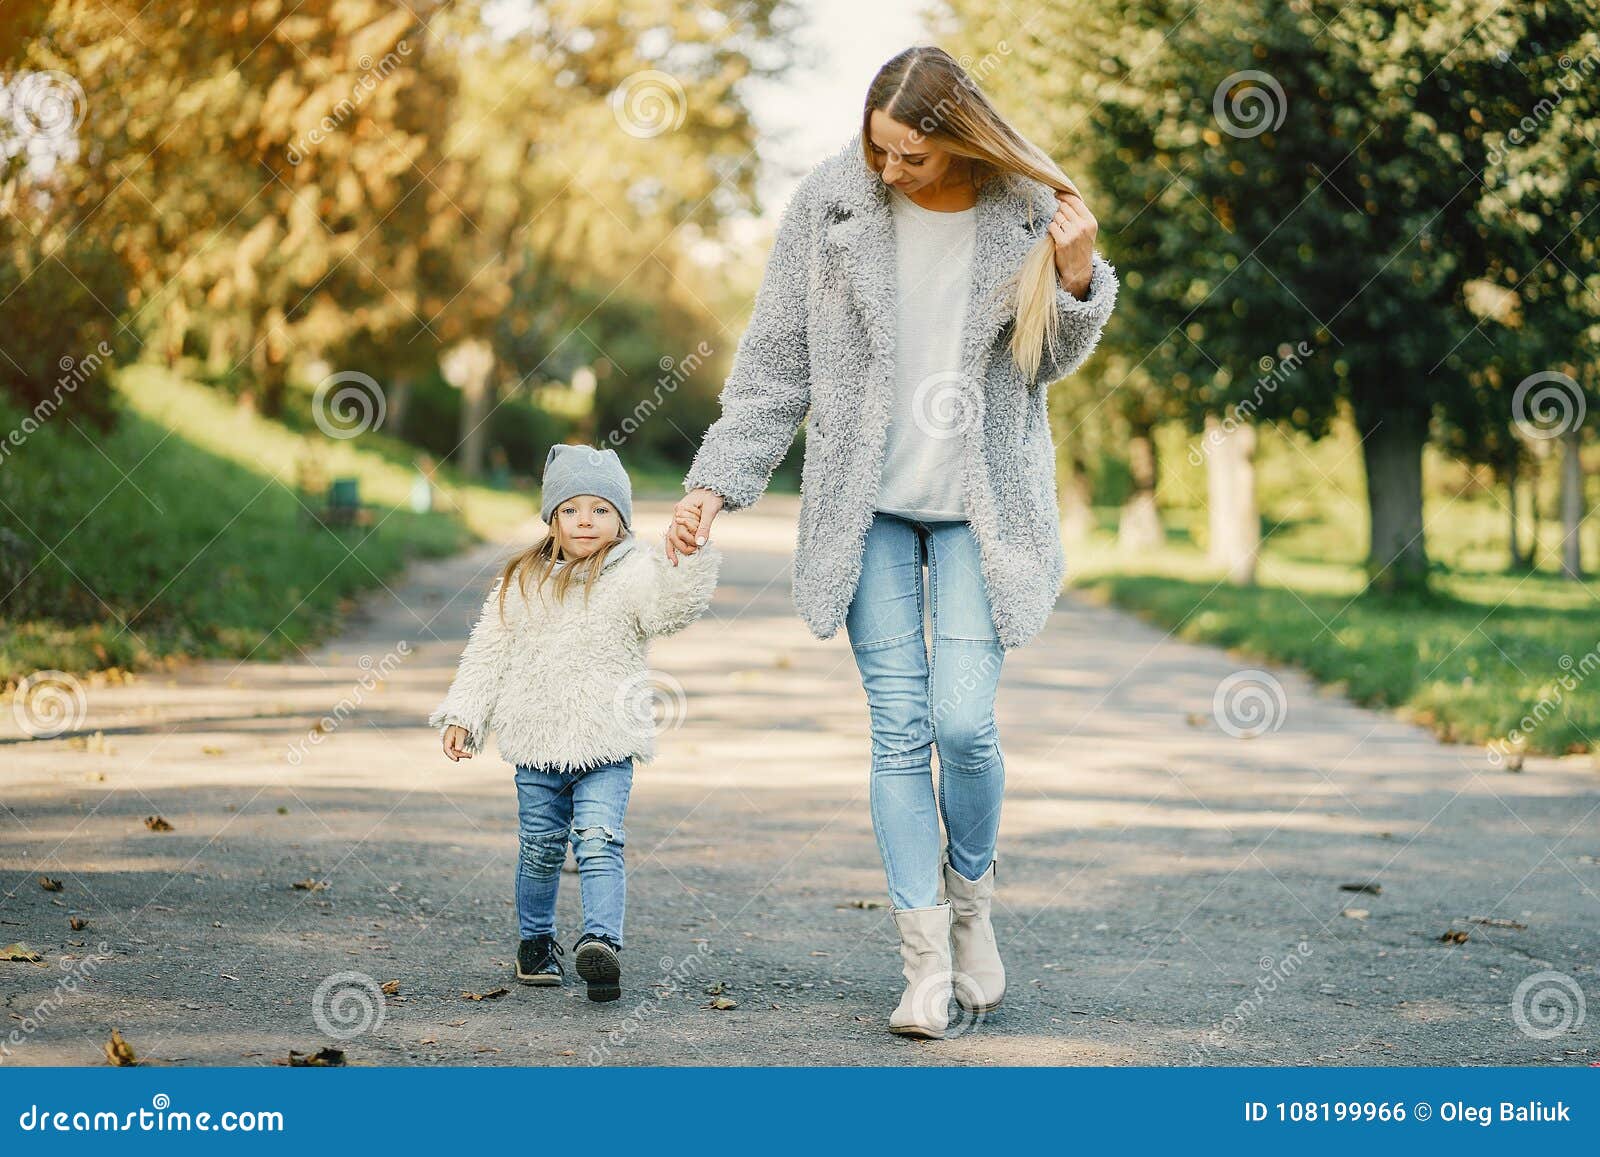 Мама с марусей любят гулять в парке. Фото женщин с детьми на прогулке. Мама играет с ребенком в догонялки. Мама с ребенком на прогулке референс. Молодая мама гуляет с ребенком.